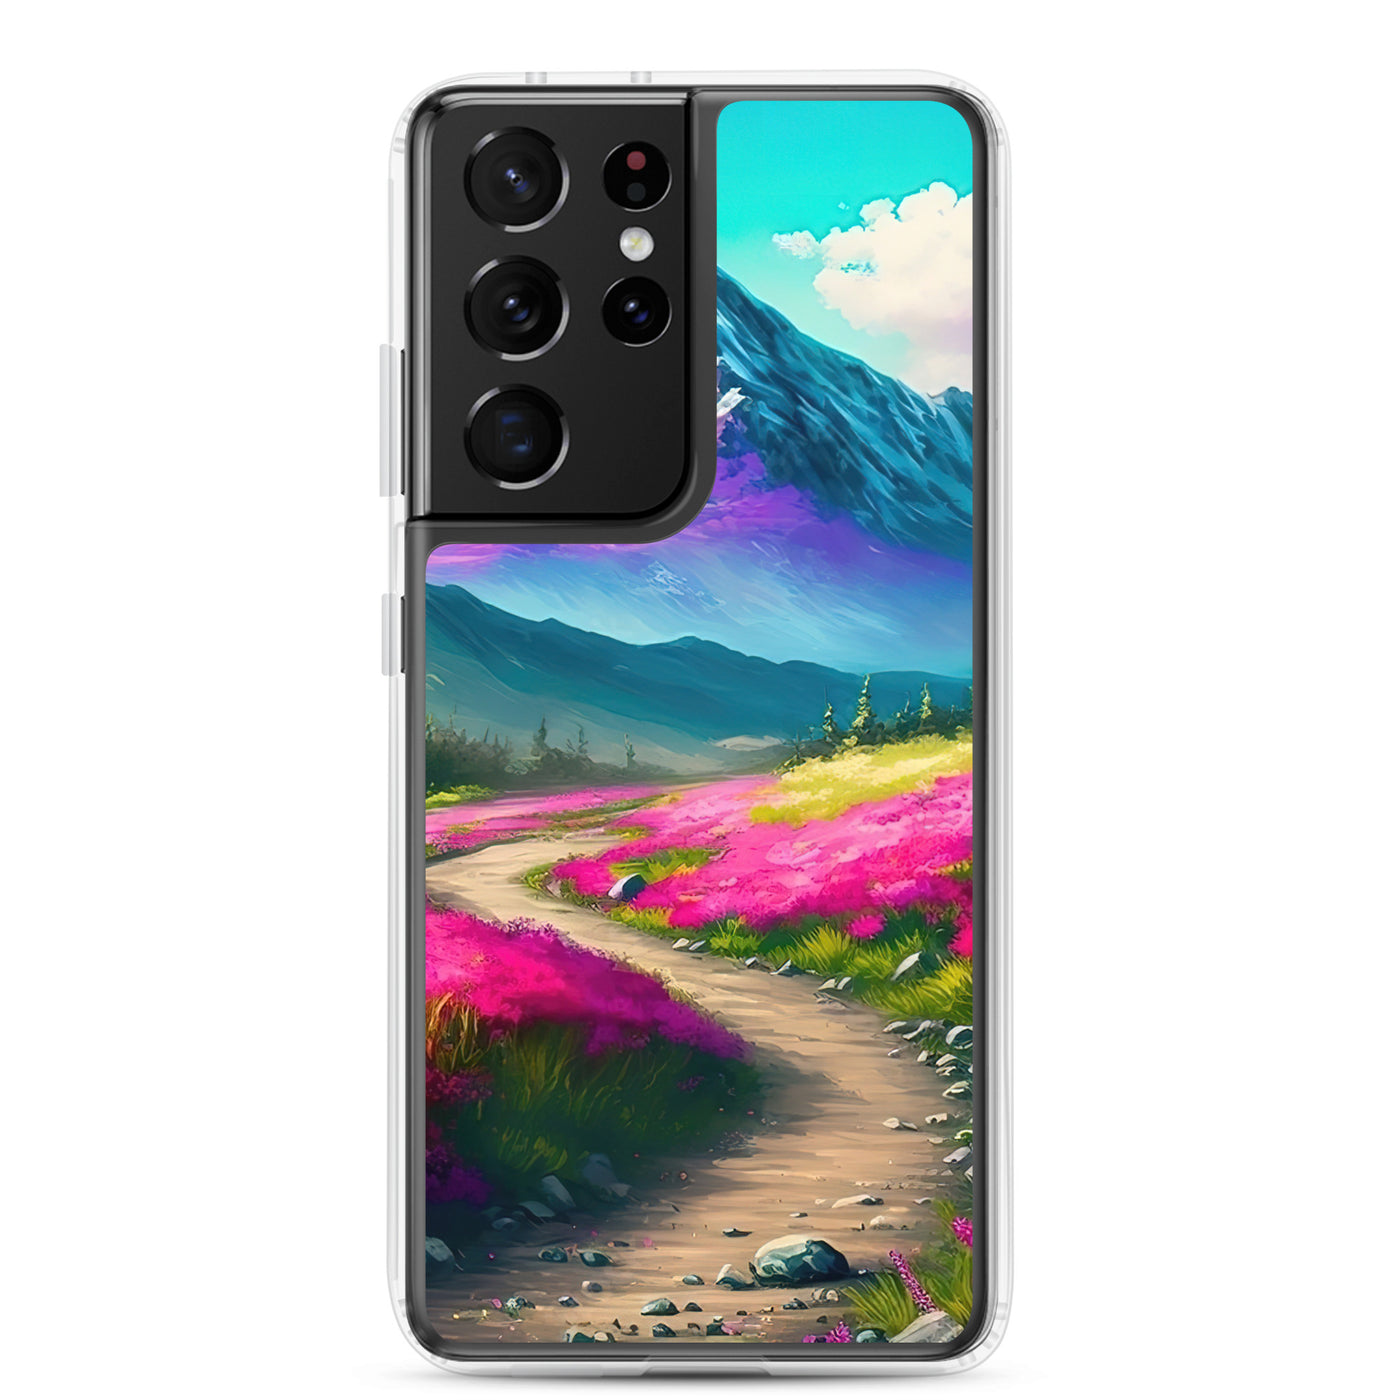 Berg, pinke Blumen und Wanderweg - Landschaftsmalerei - Samsung Schutzhülle (durchsichtig) berge xxx Samsung Galaxy S21 Ultra